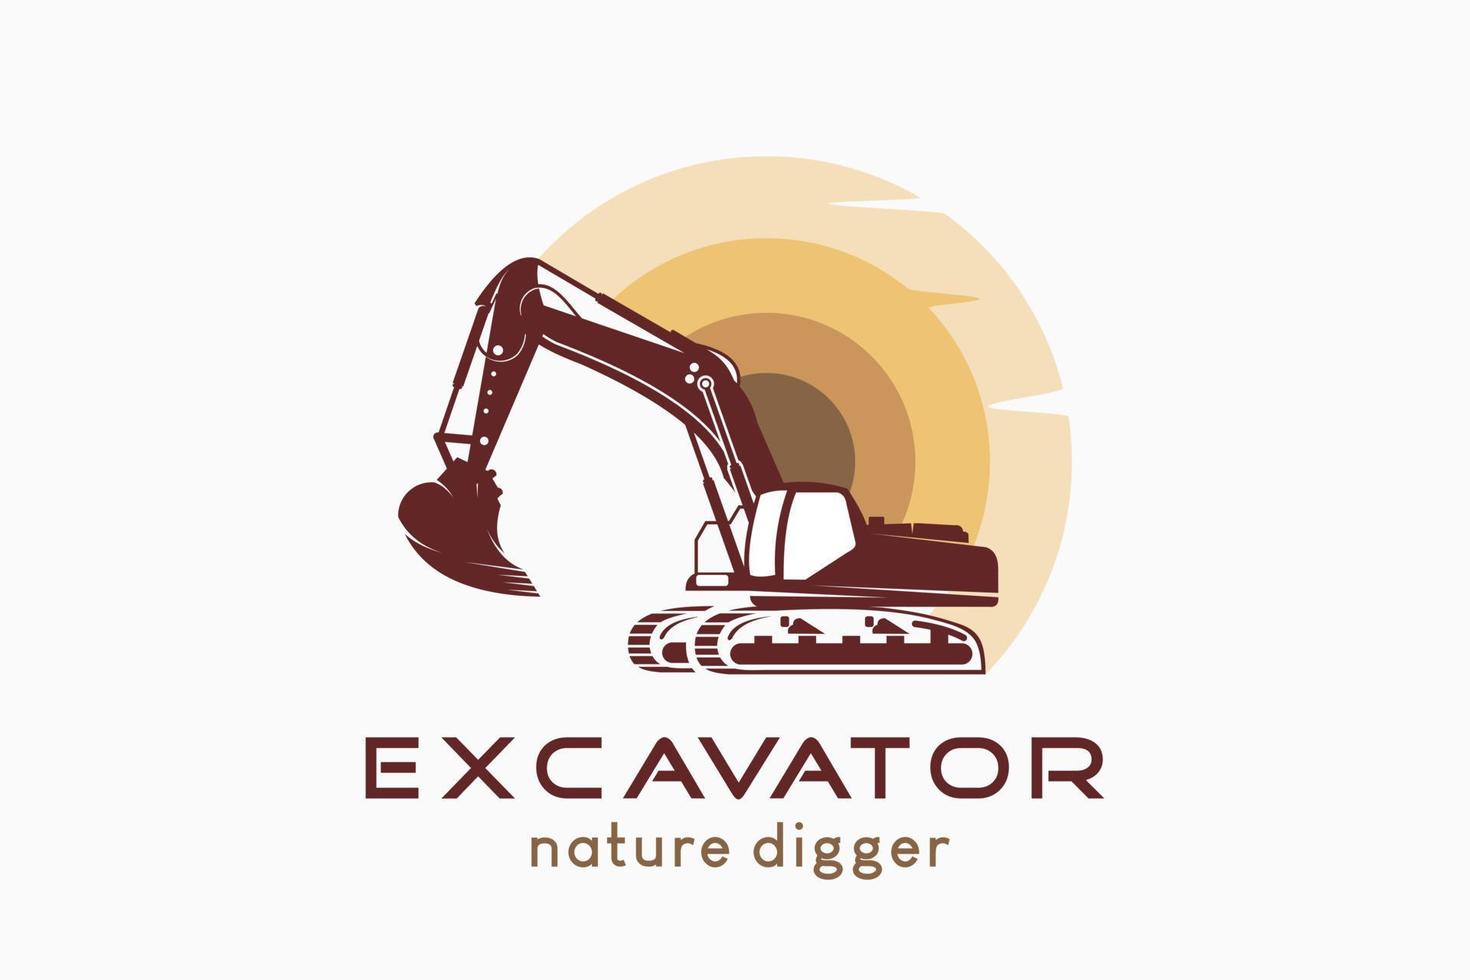 création de logo d'excavatrice avec silhouette d'excavatrice combinée au soleil, illustration vectorielle d'une excavatrice nature avec un concept créatif. vecteur